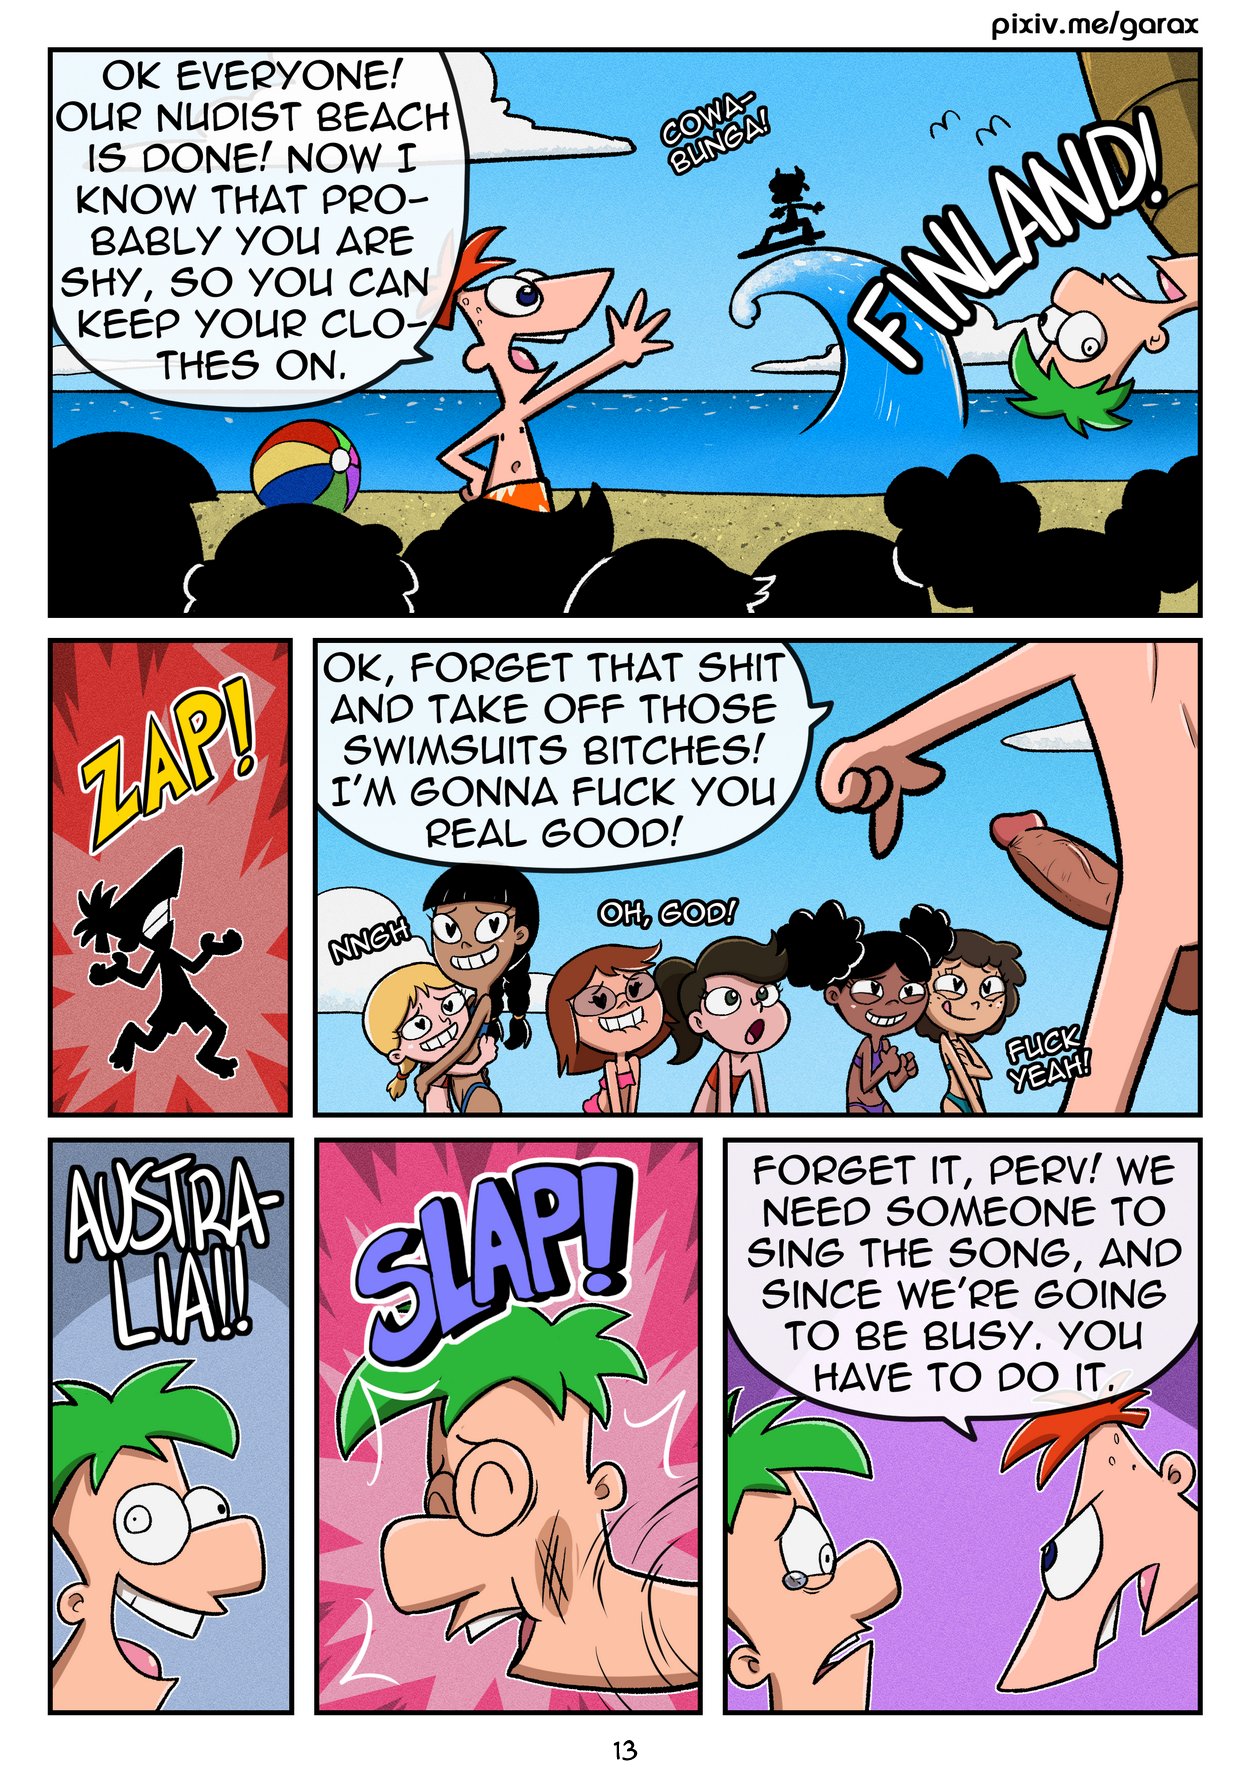 nude beach cartoon comic porn